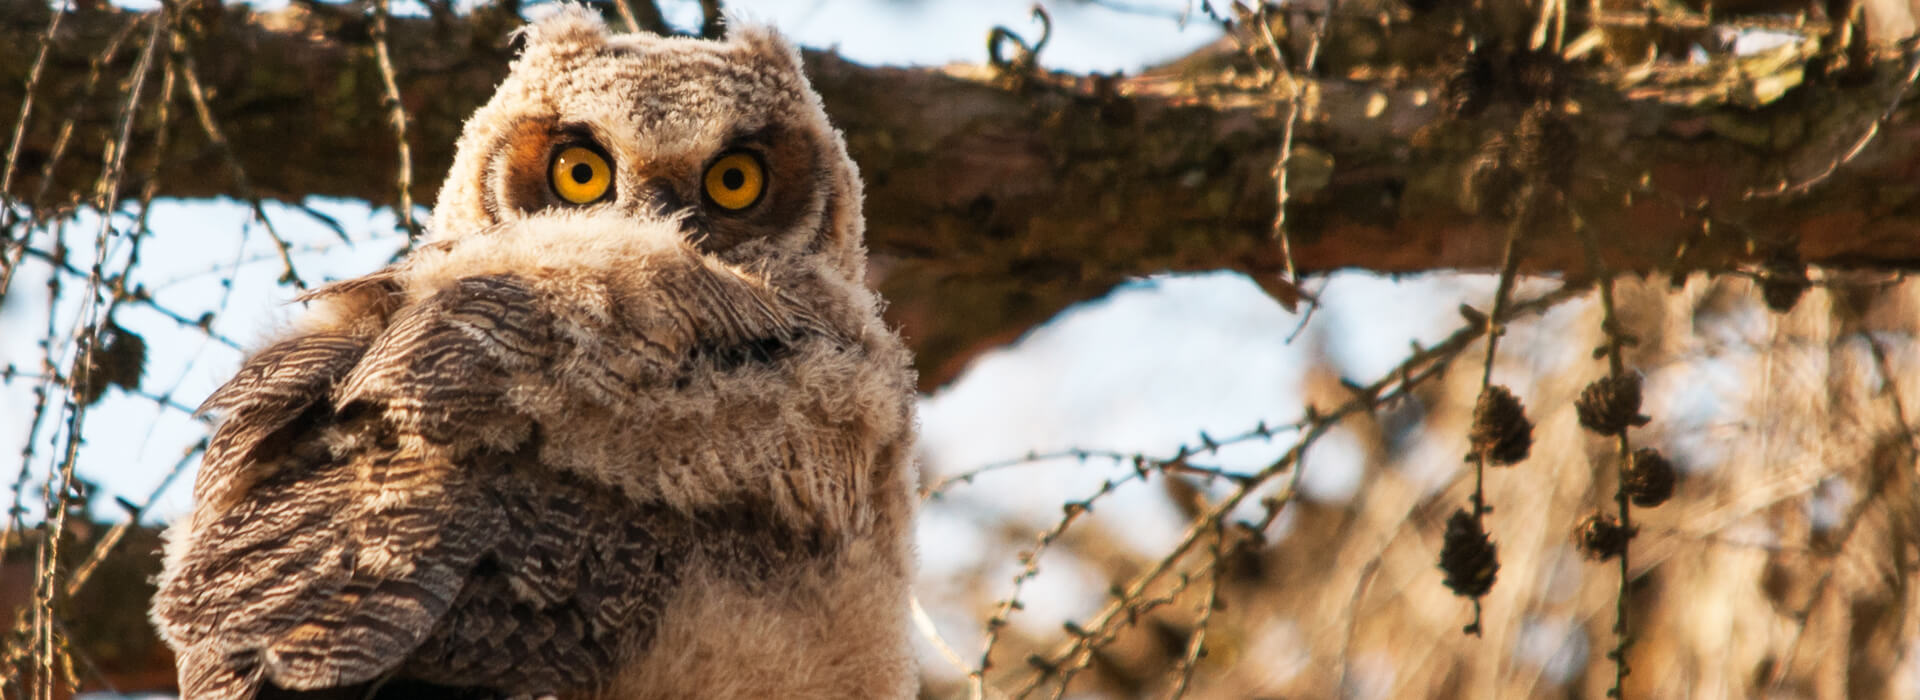 Great-horned Owl, Paul Sparks/Shutterstock